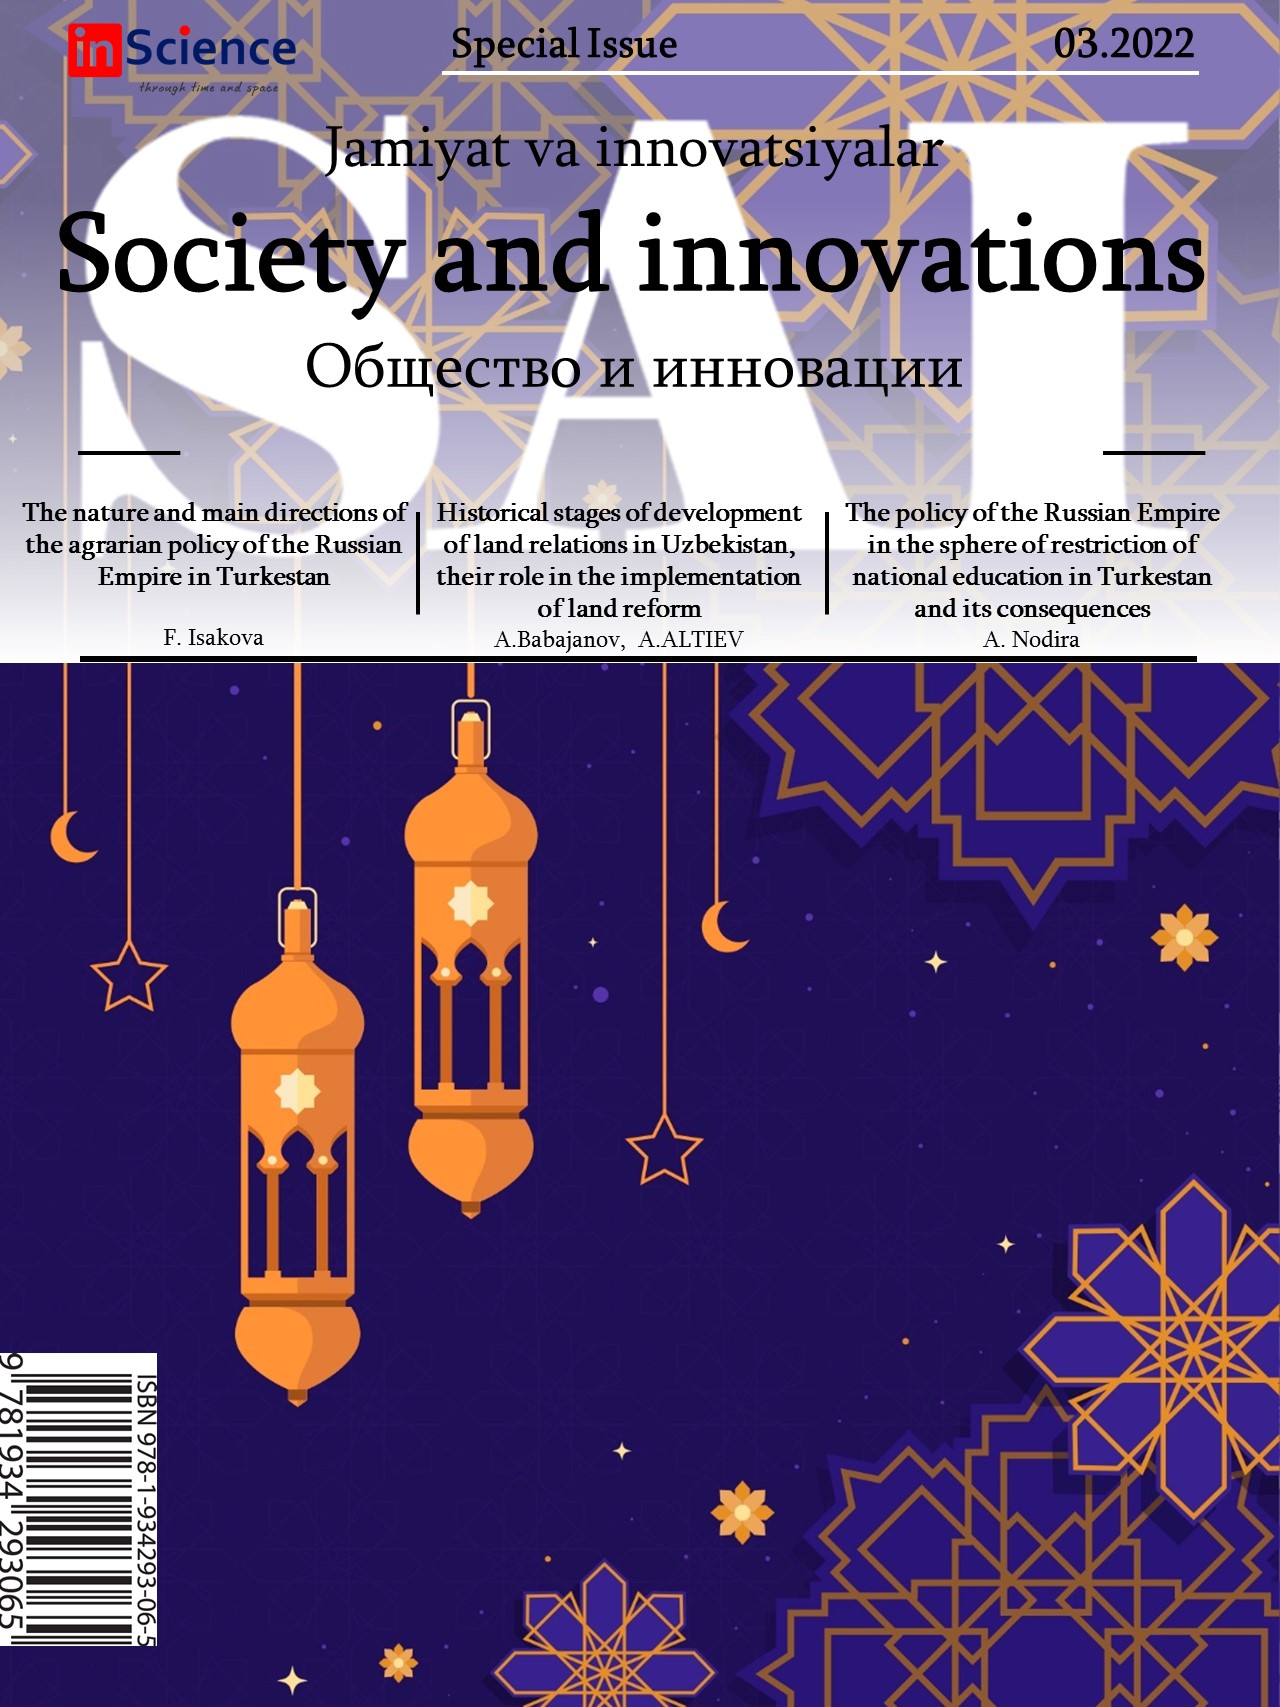 						Показать Том 3 № 3/S (2022): Спецвыпуск междисциплинарного электронного научного журнала «Общество и инновации»
					